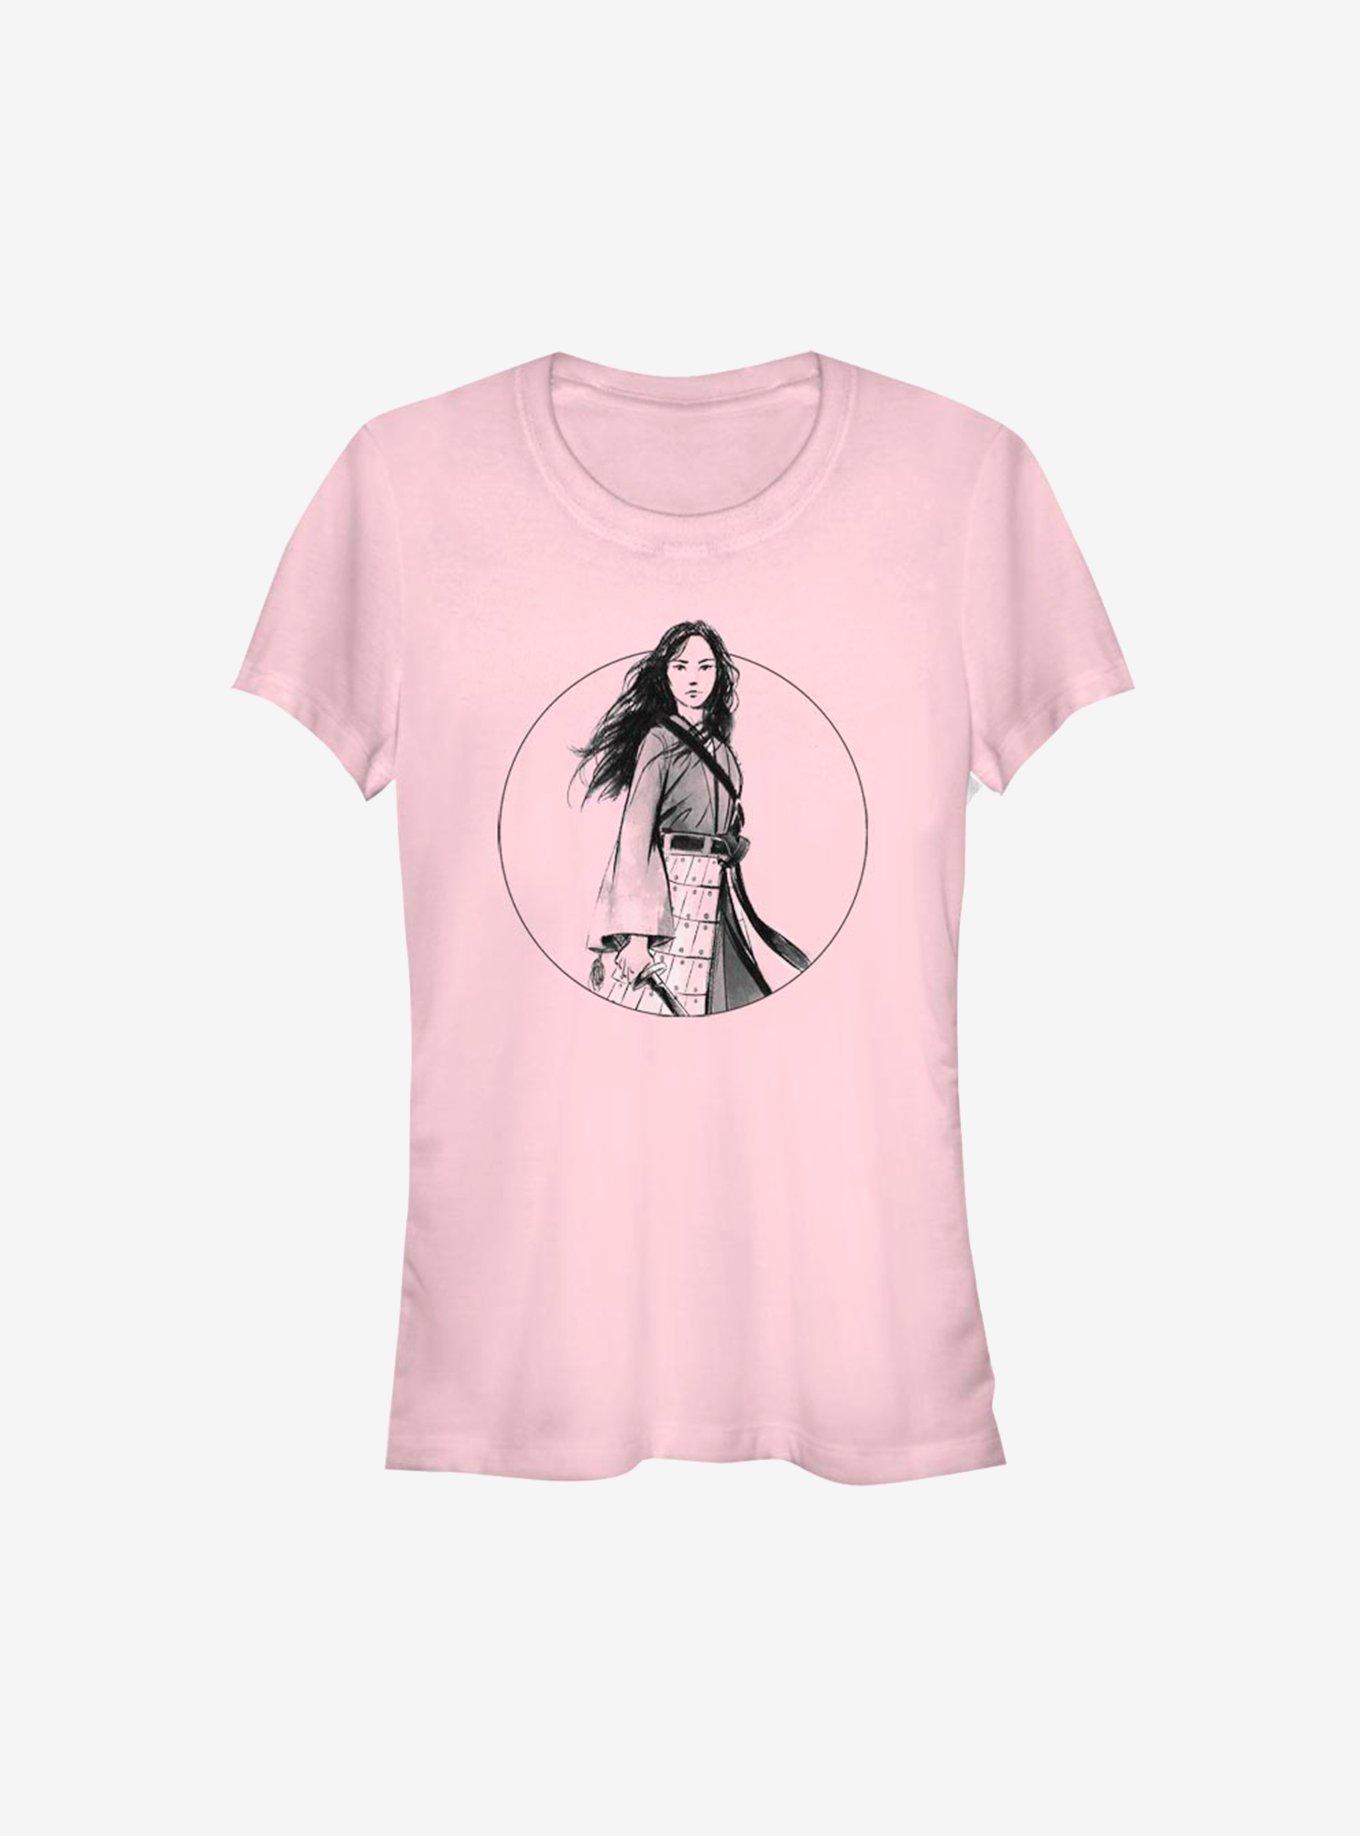 Disney Mulan Live Action Sketch Portrait Girls T-Shirt, LIGHT PINK, hi-res